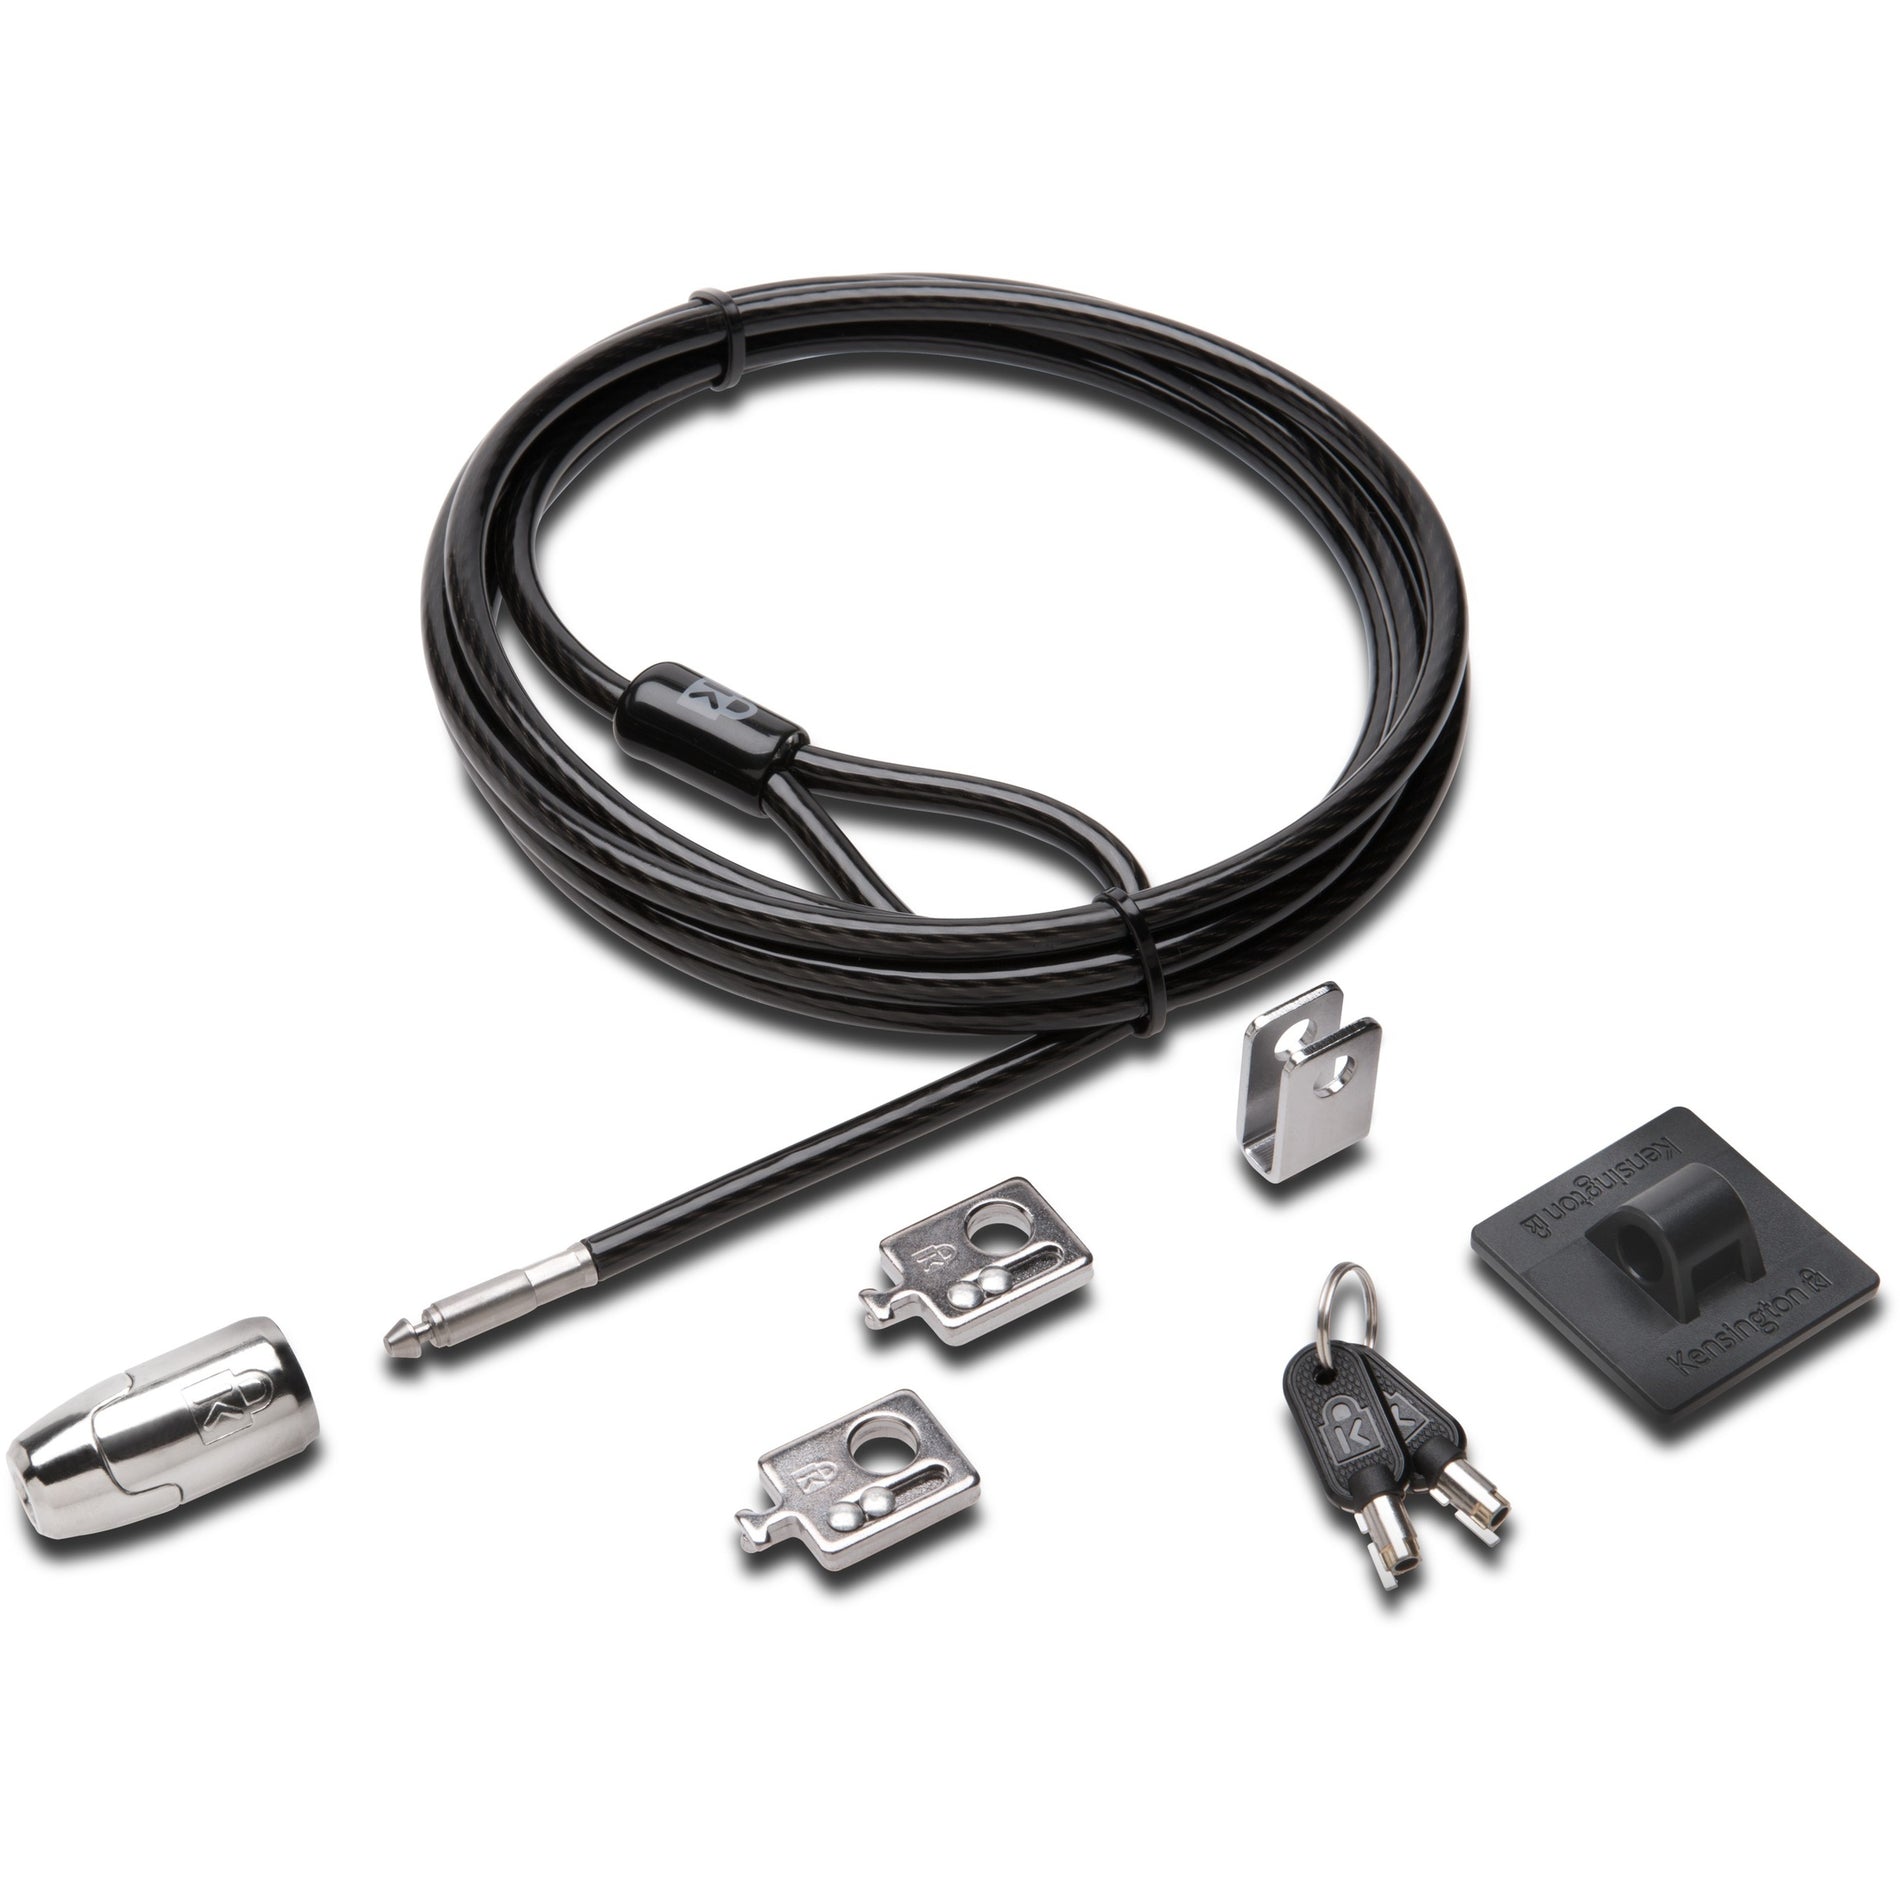 Kensington K64424WW Desktop & Peripherals Locking Kit 2.0, Keyed Lock, 8 ft Cable Length